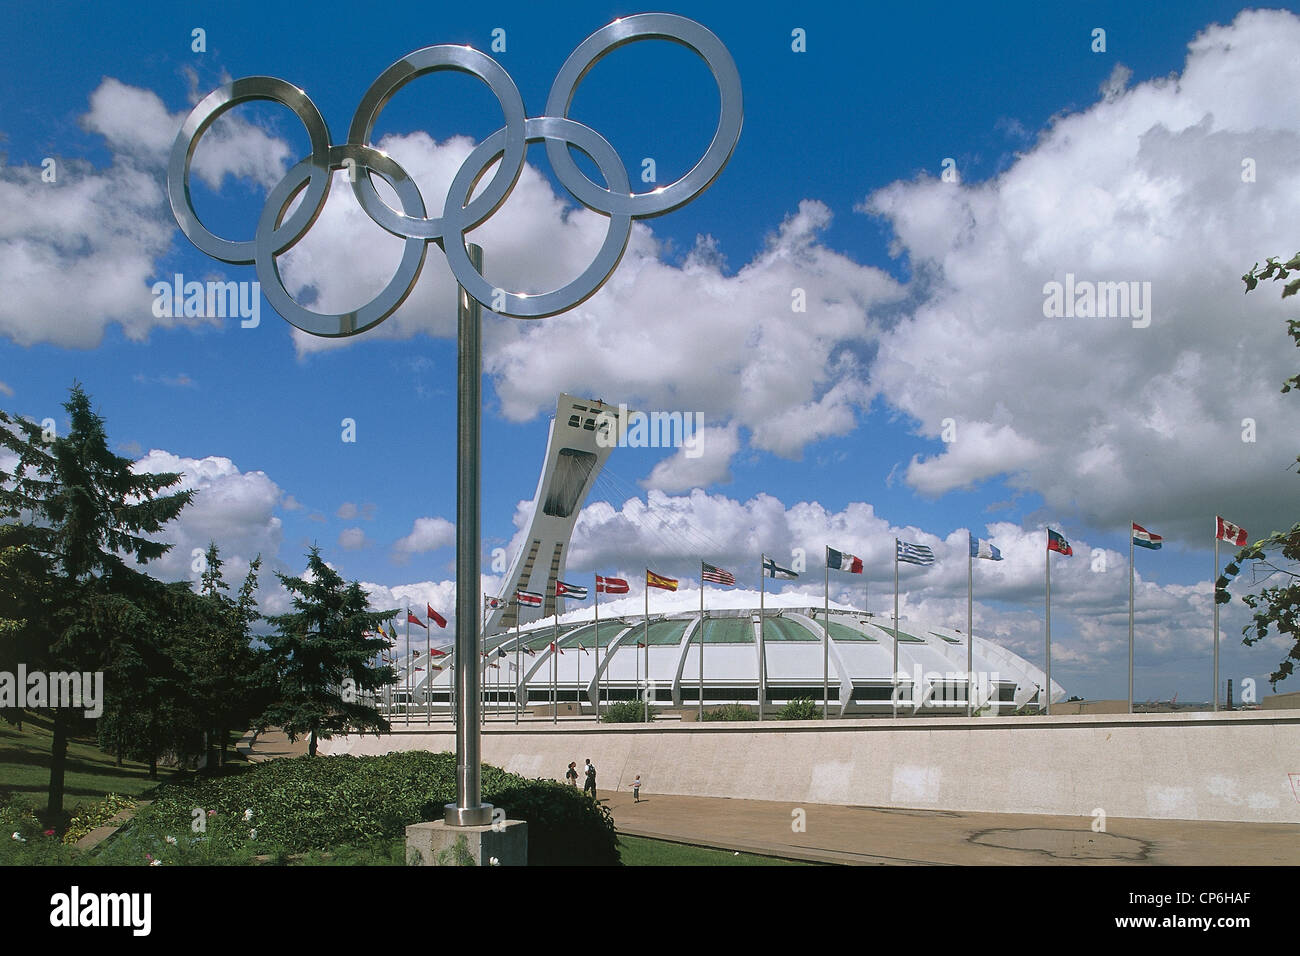 Canada - Quebec - Montreal - Villaggio Olimpico, Olympic Stadium. Foto Stock